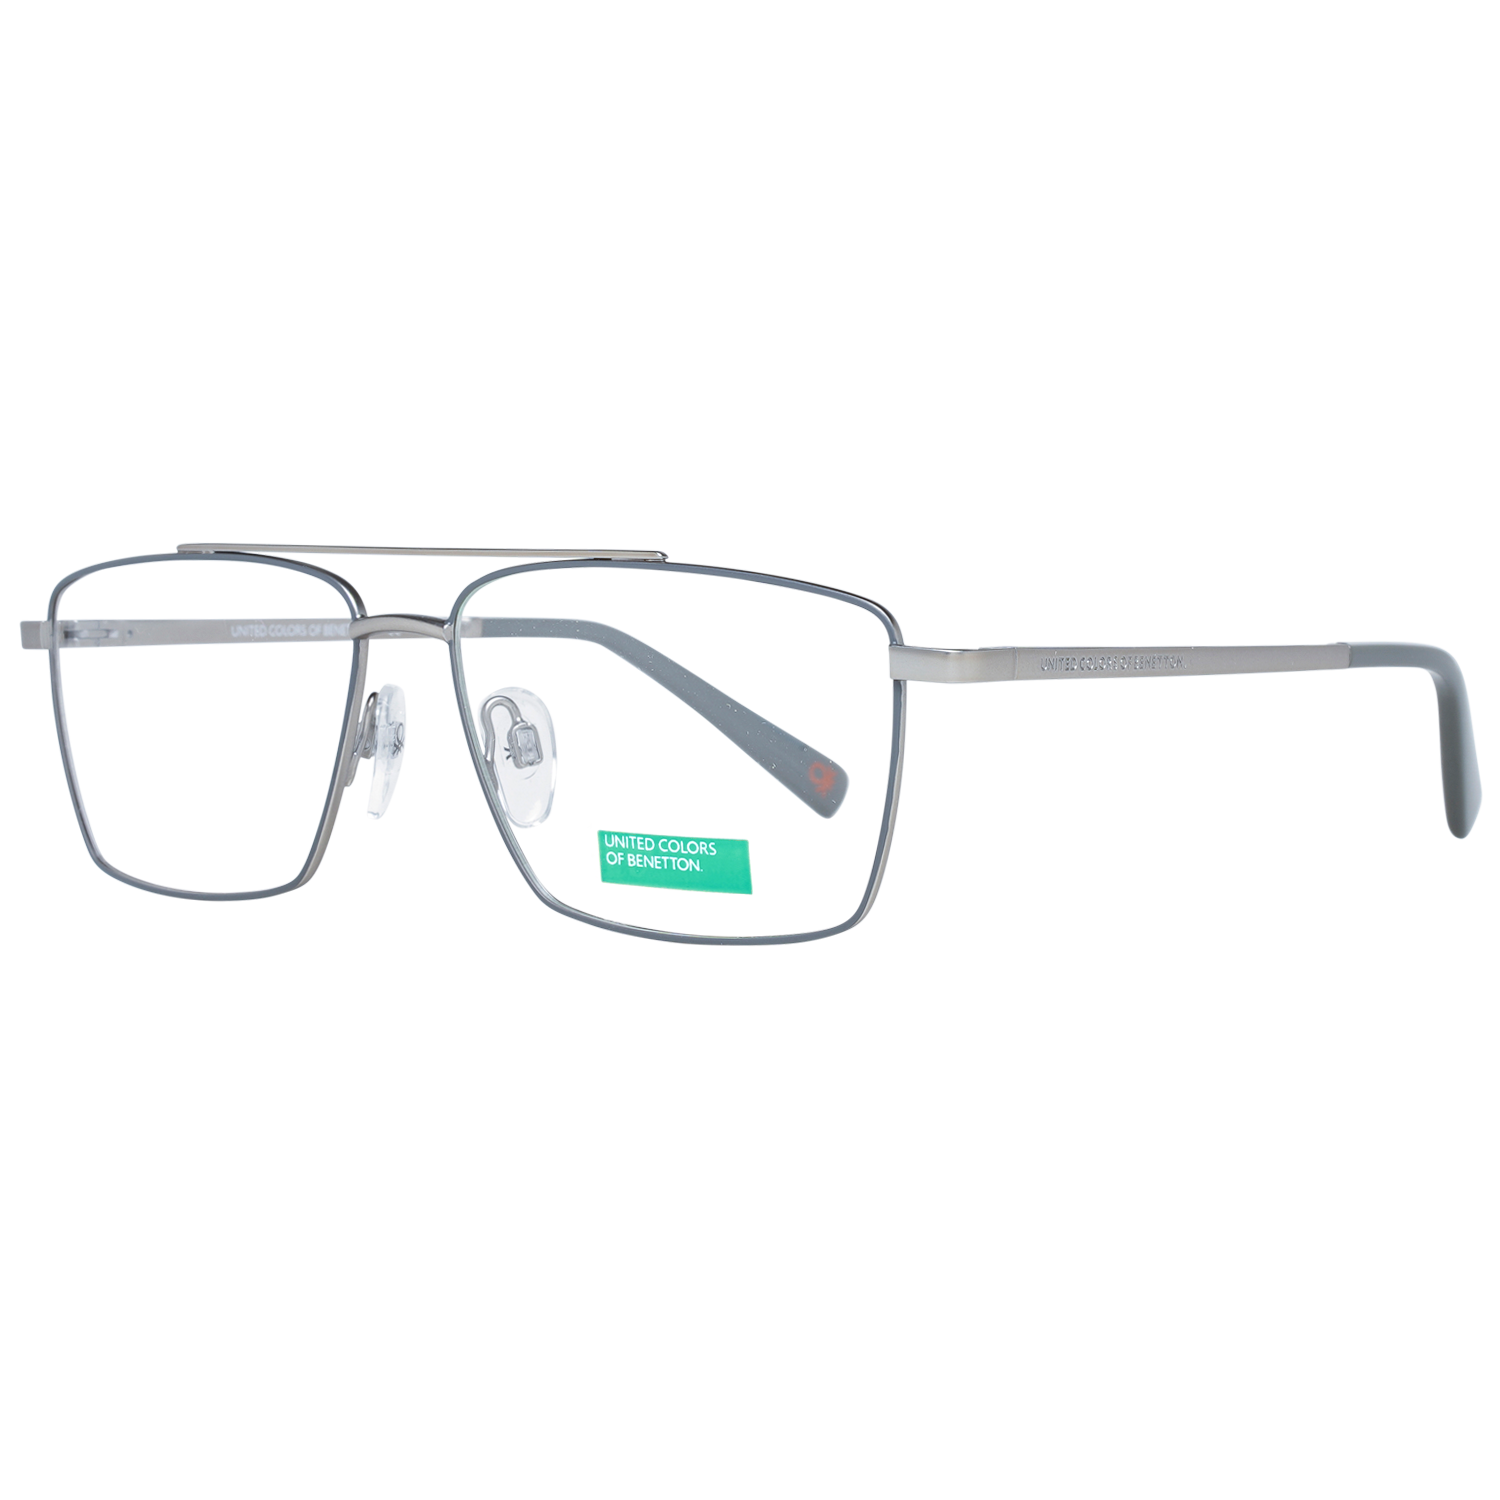 Benetton Frames Benetton Glasses Frames BEO3000 925 55 Eyeglasses Eyewear UK USA Australia 